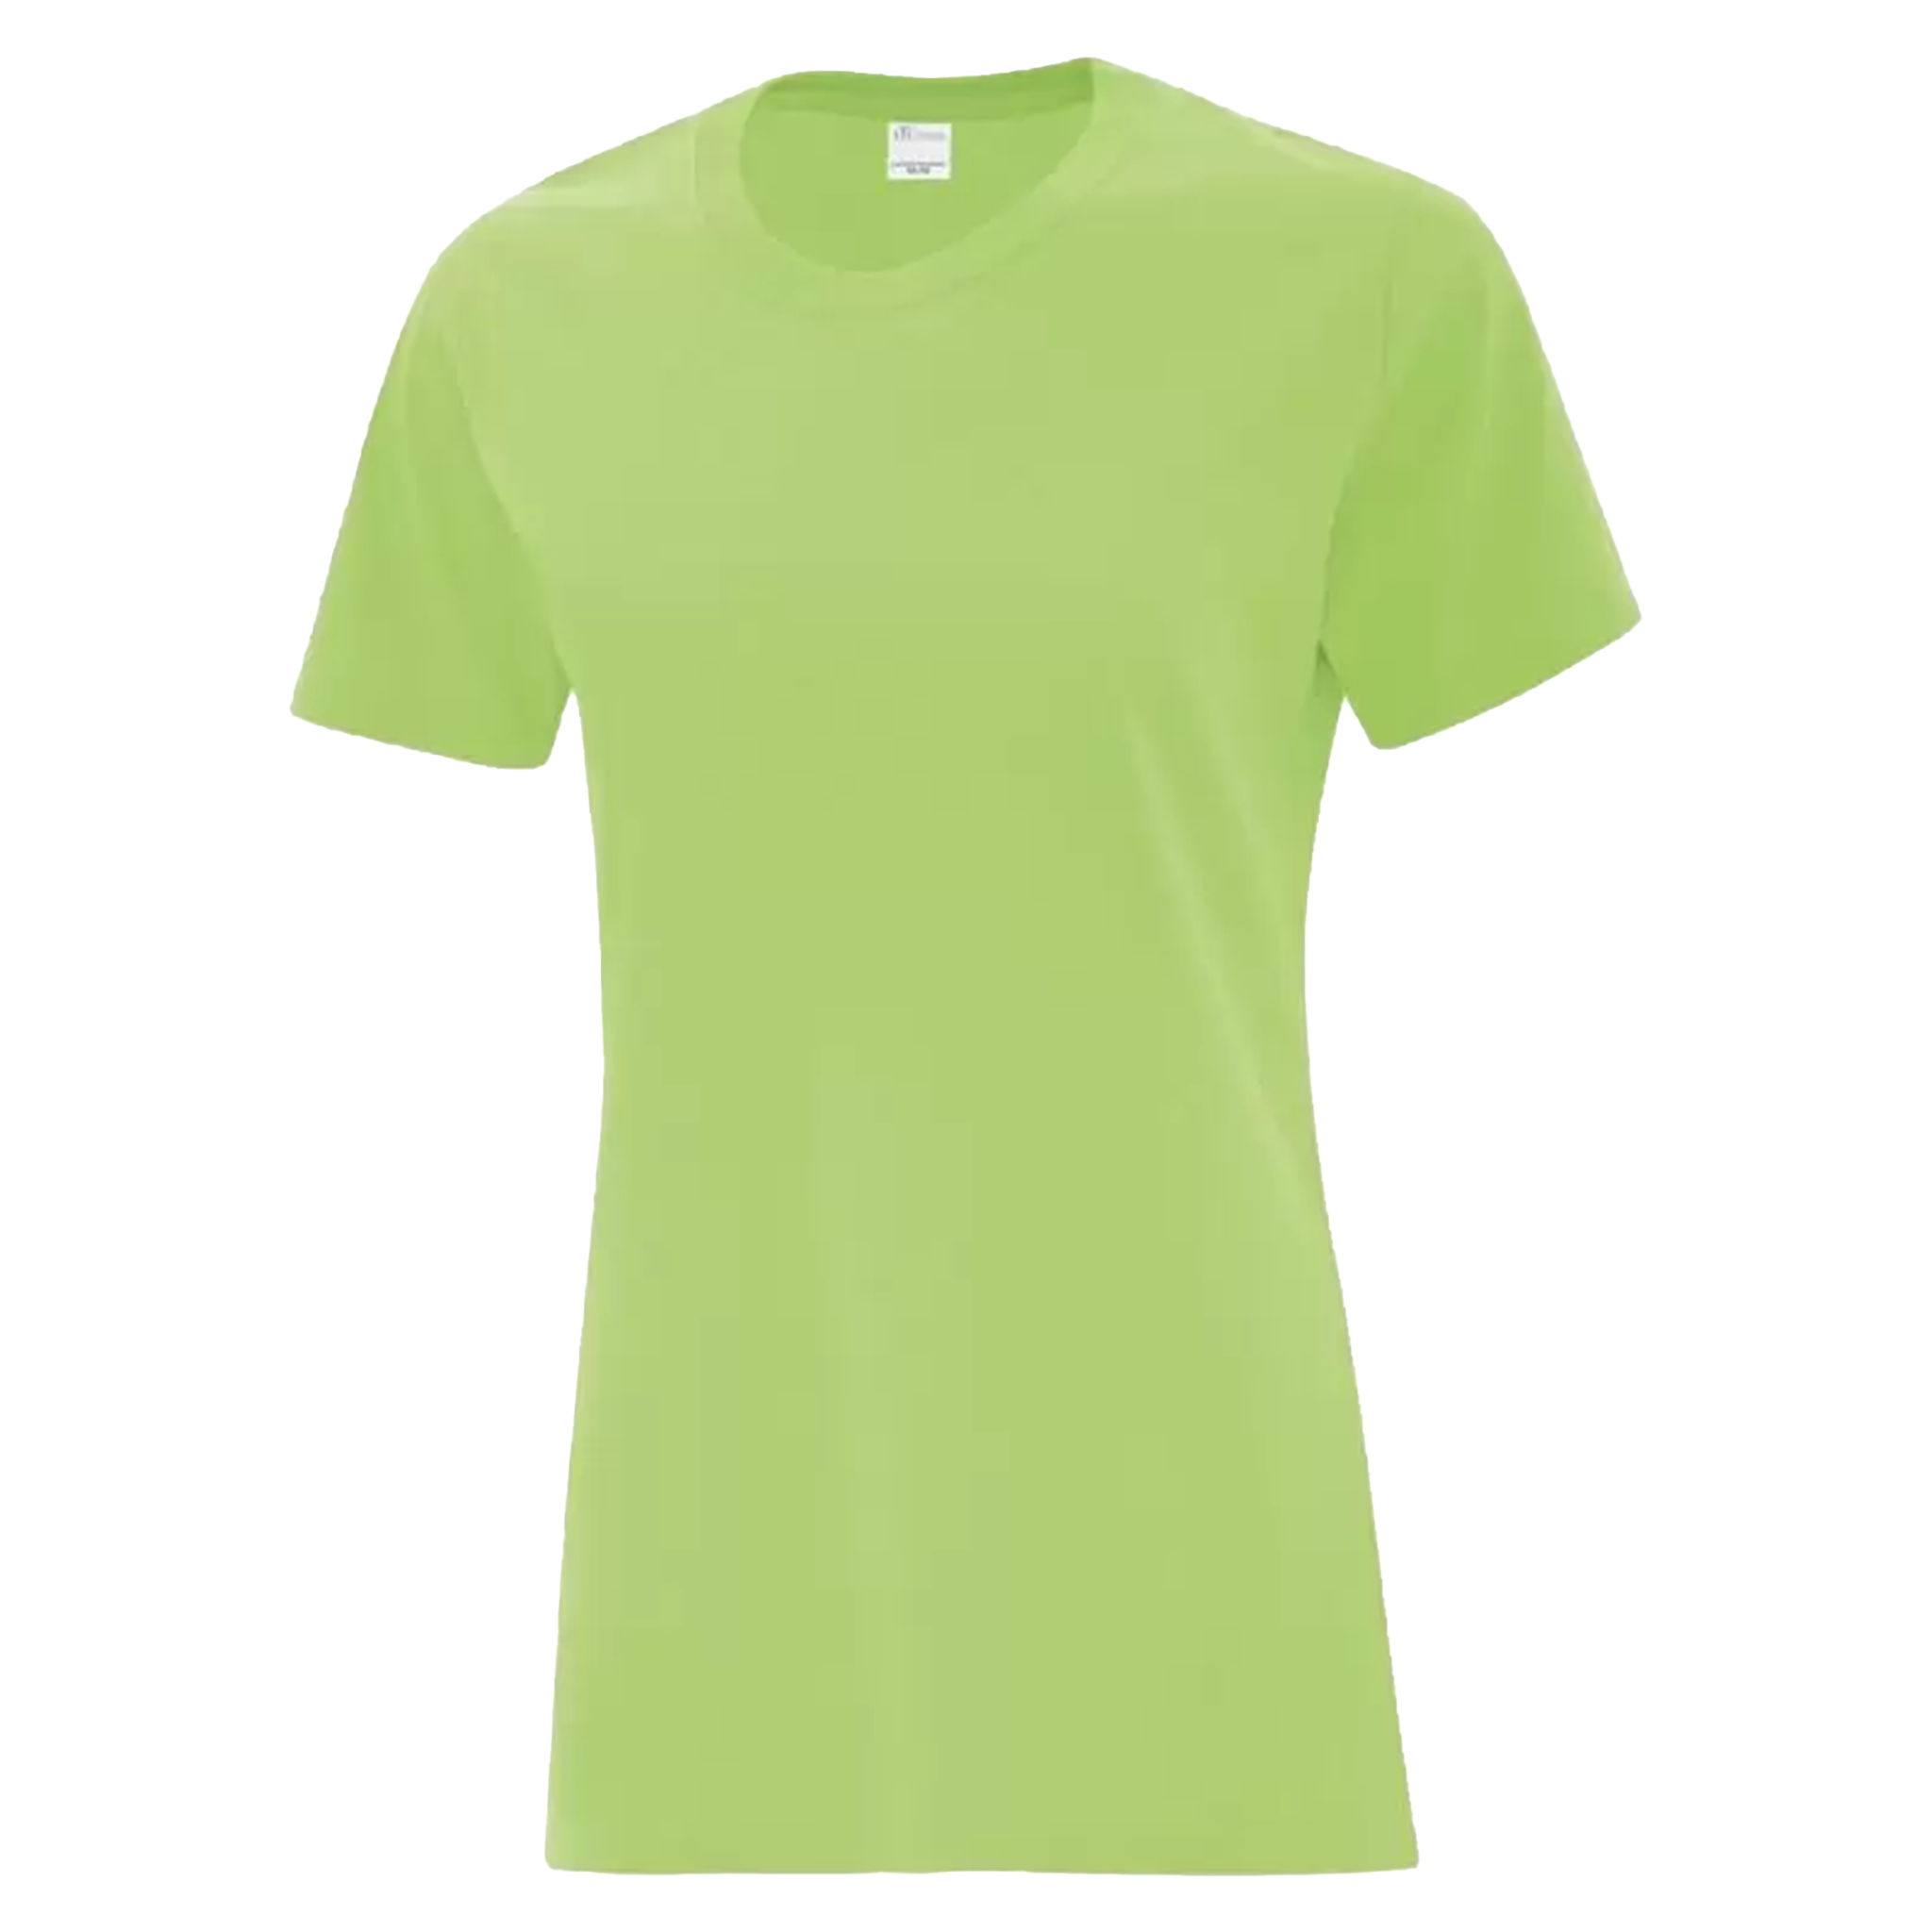 ATC Everyday Cotton T-Shirt - Women's Sizing XS-4XL - Kiwi